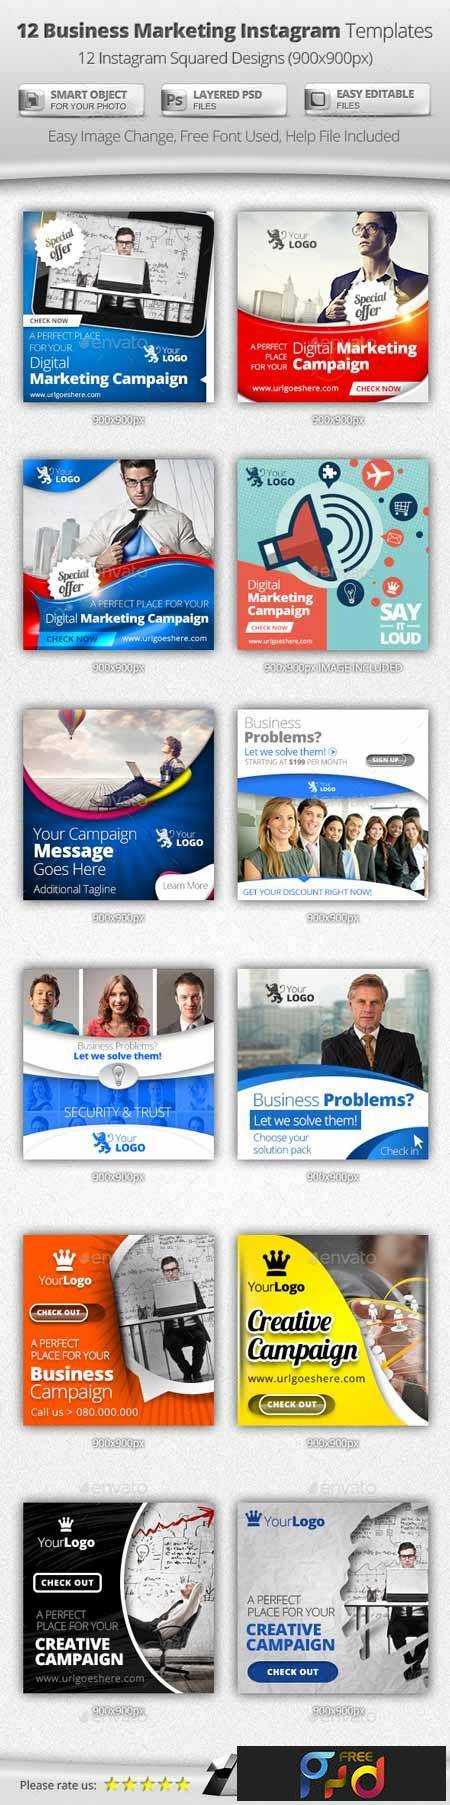 freepsdvn-com_1453913536_business-digital-marketing-instagram-templates-11327637